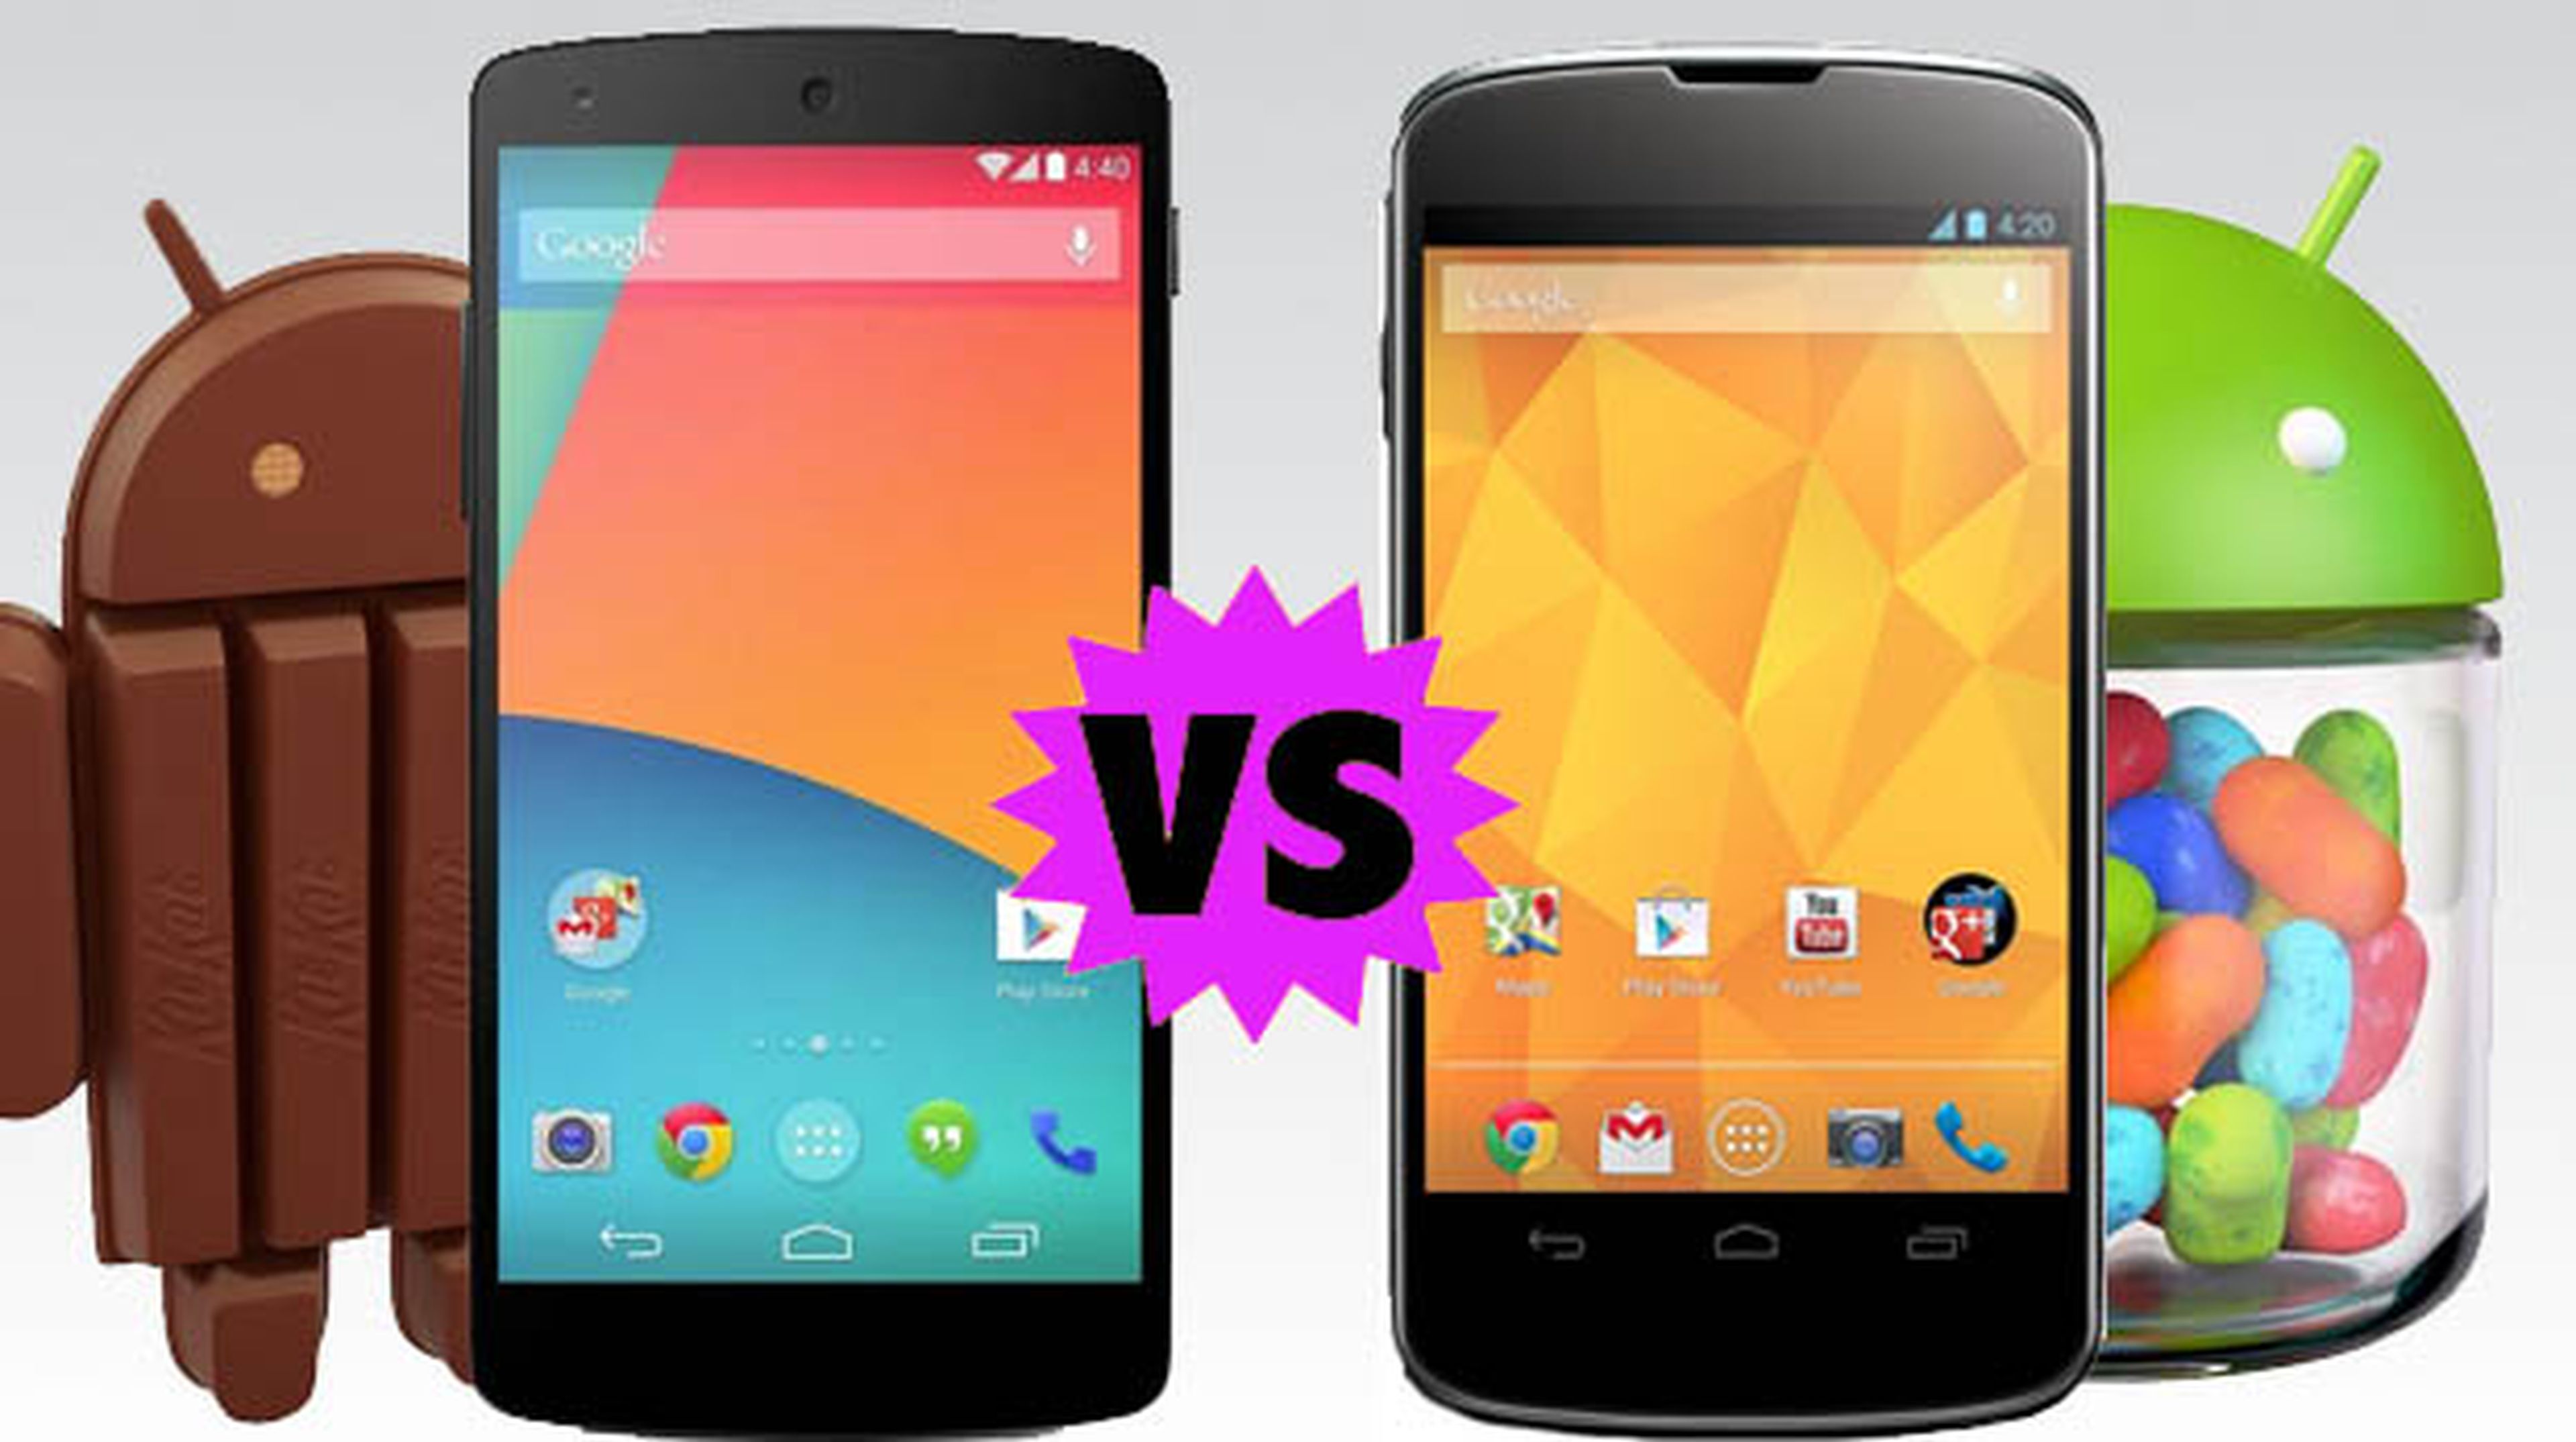 Nexus 4 vs Nexus 5